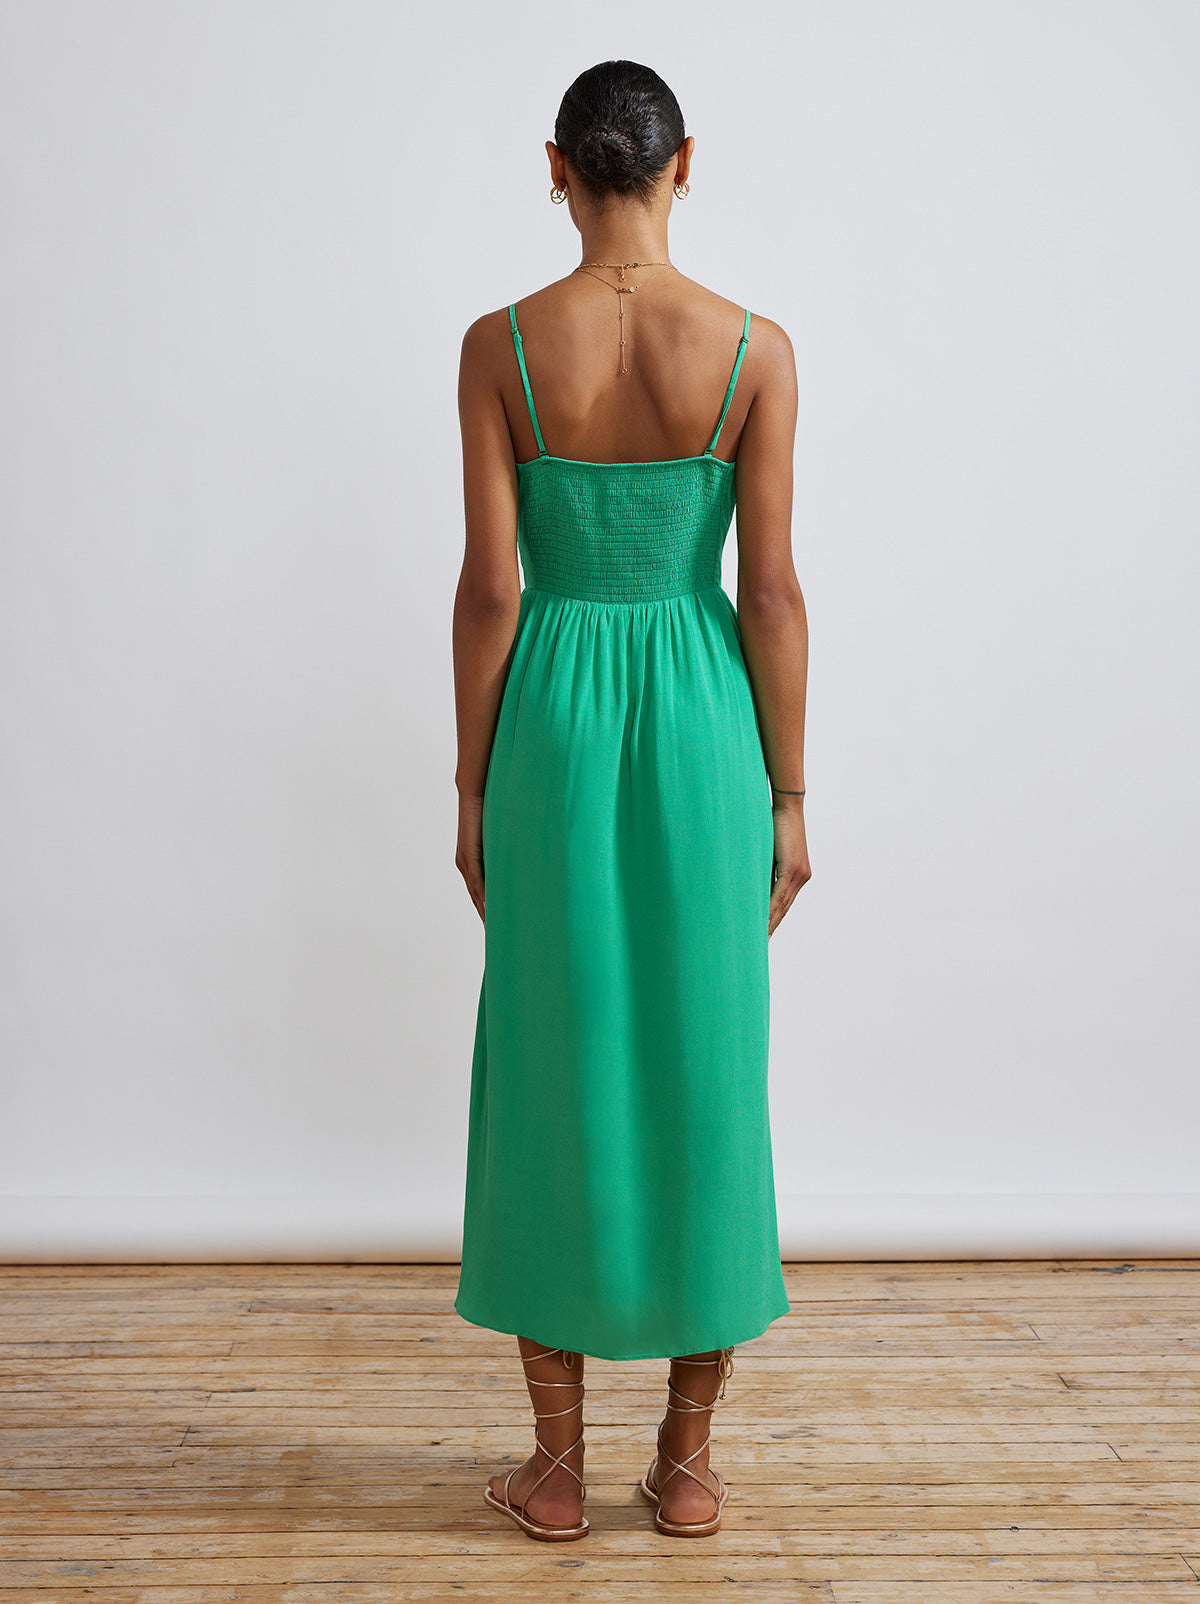 Genevieve Green Midi Dress by KITRI Studio